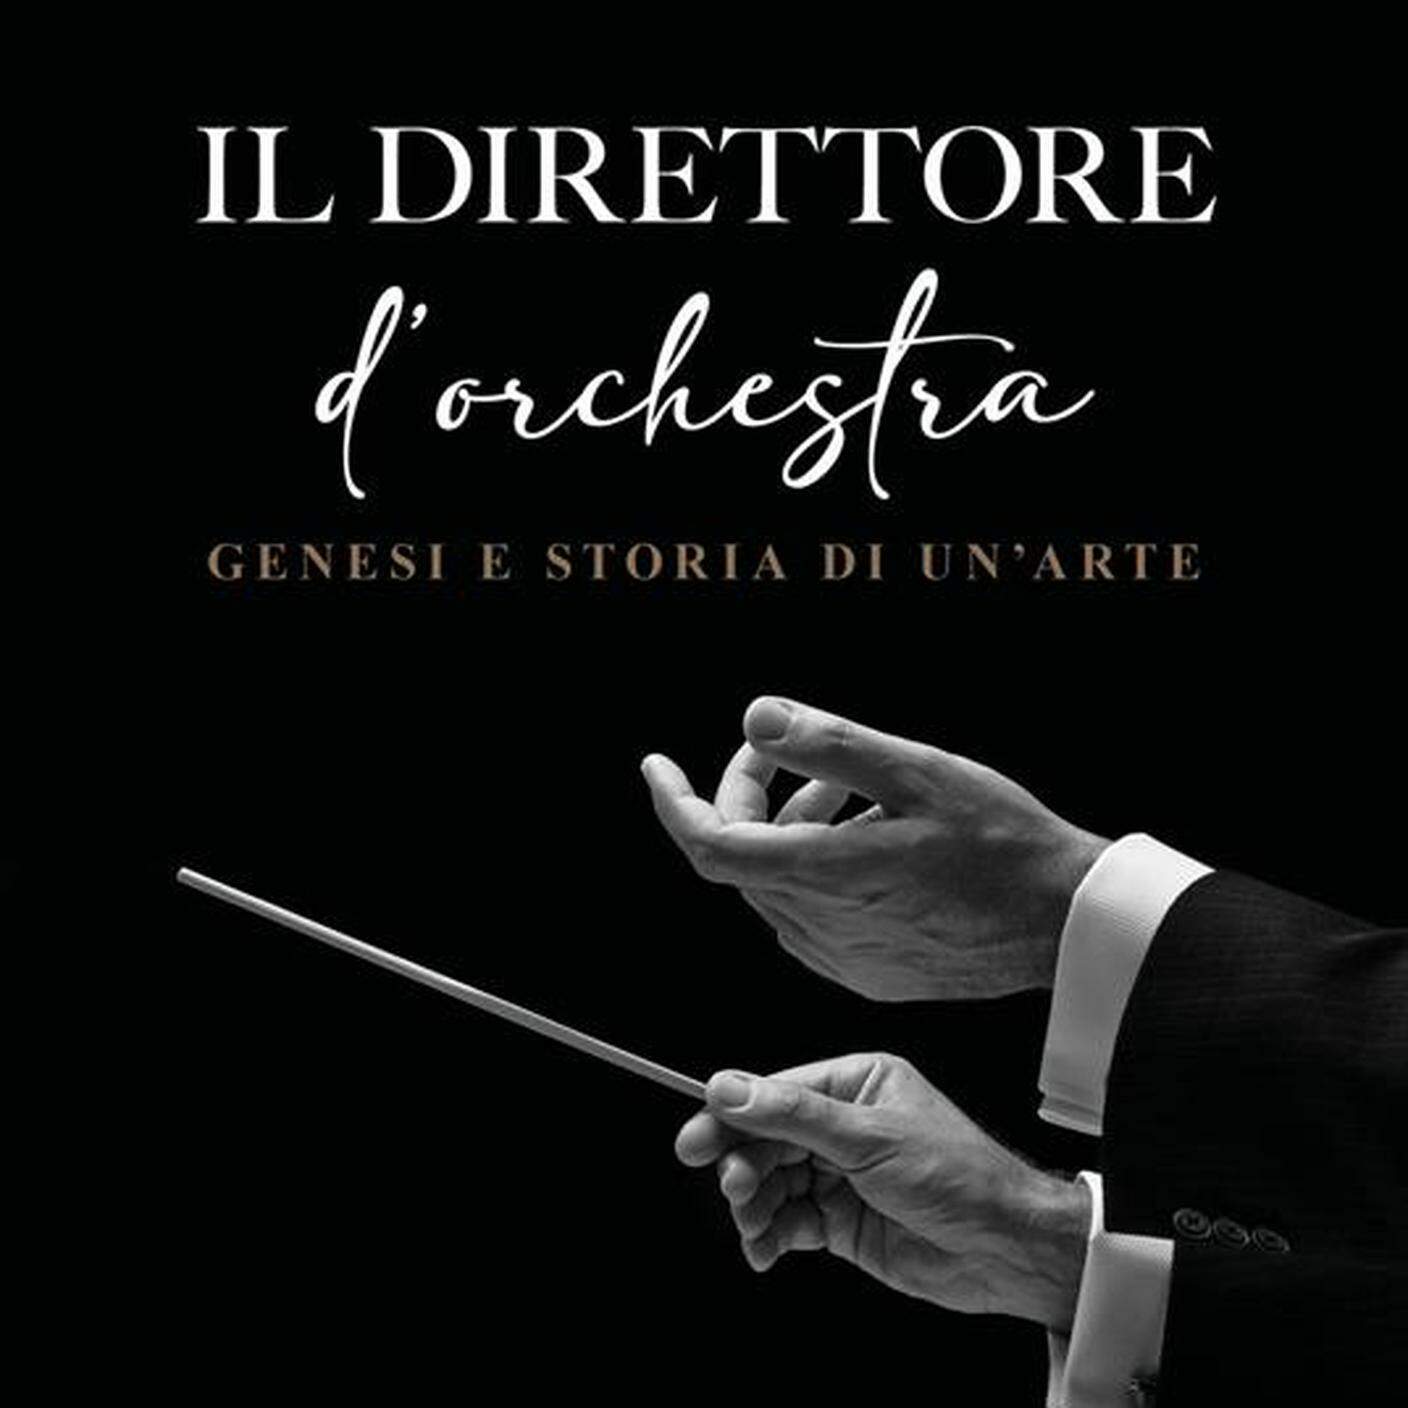 “Il direttore d’orchestra. Genesi e storia di un’arte” di Ivano Cavallini, Edizioni Curci (dettaglio di copertina)